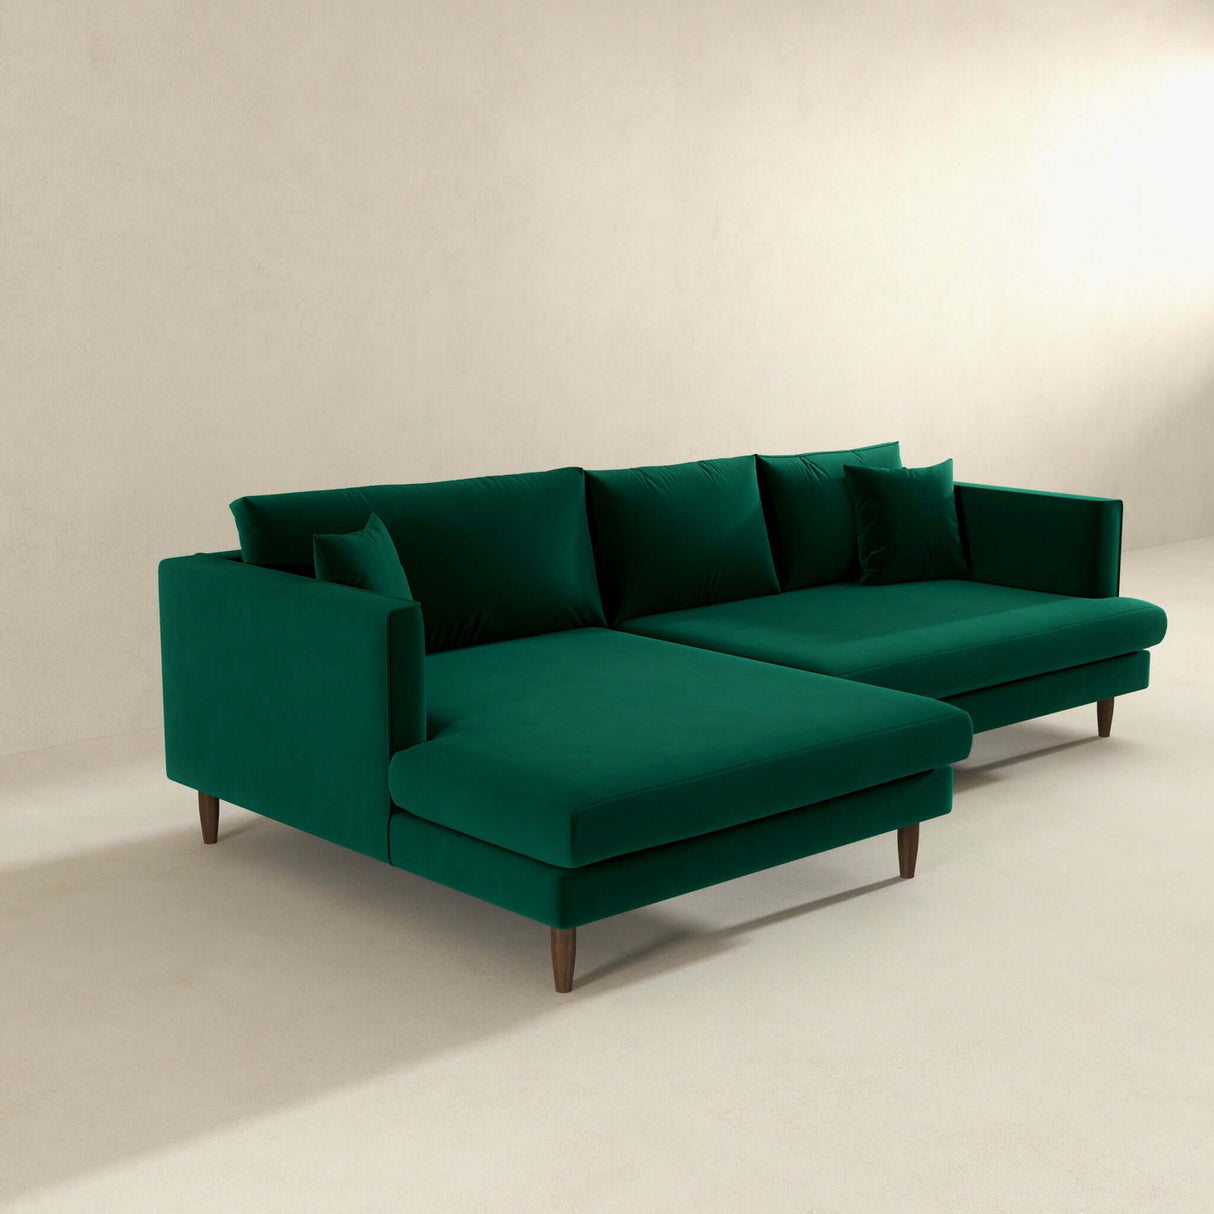 Blake L-Shaped  Sectional Sofa Green Velvet / Left Facing